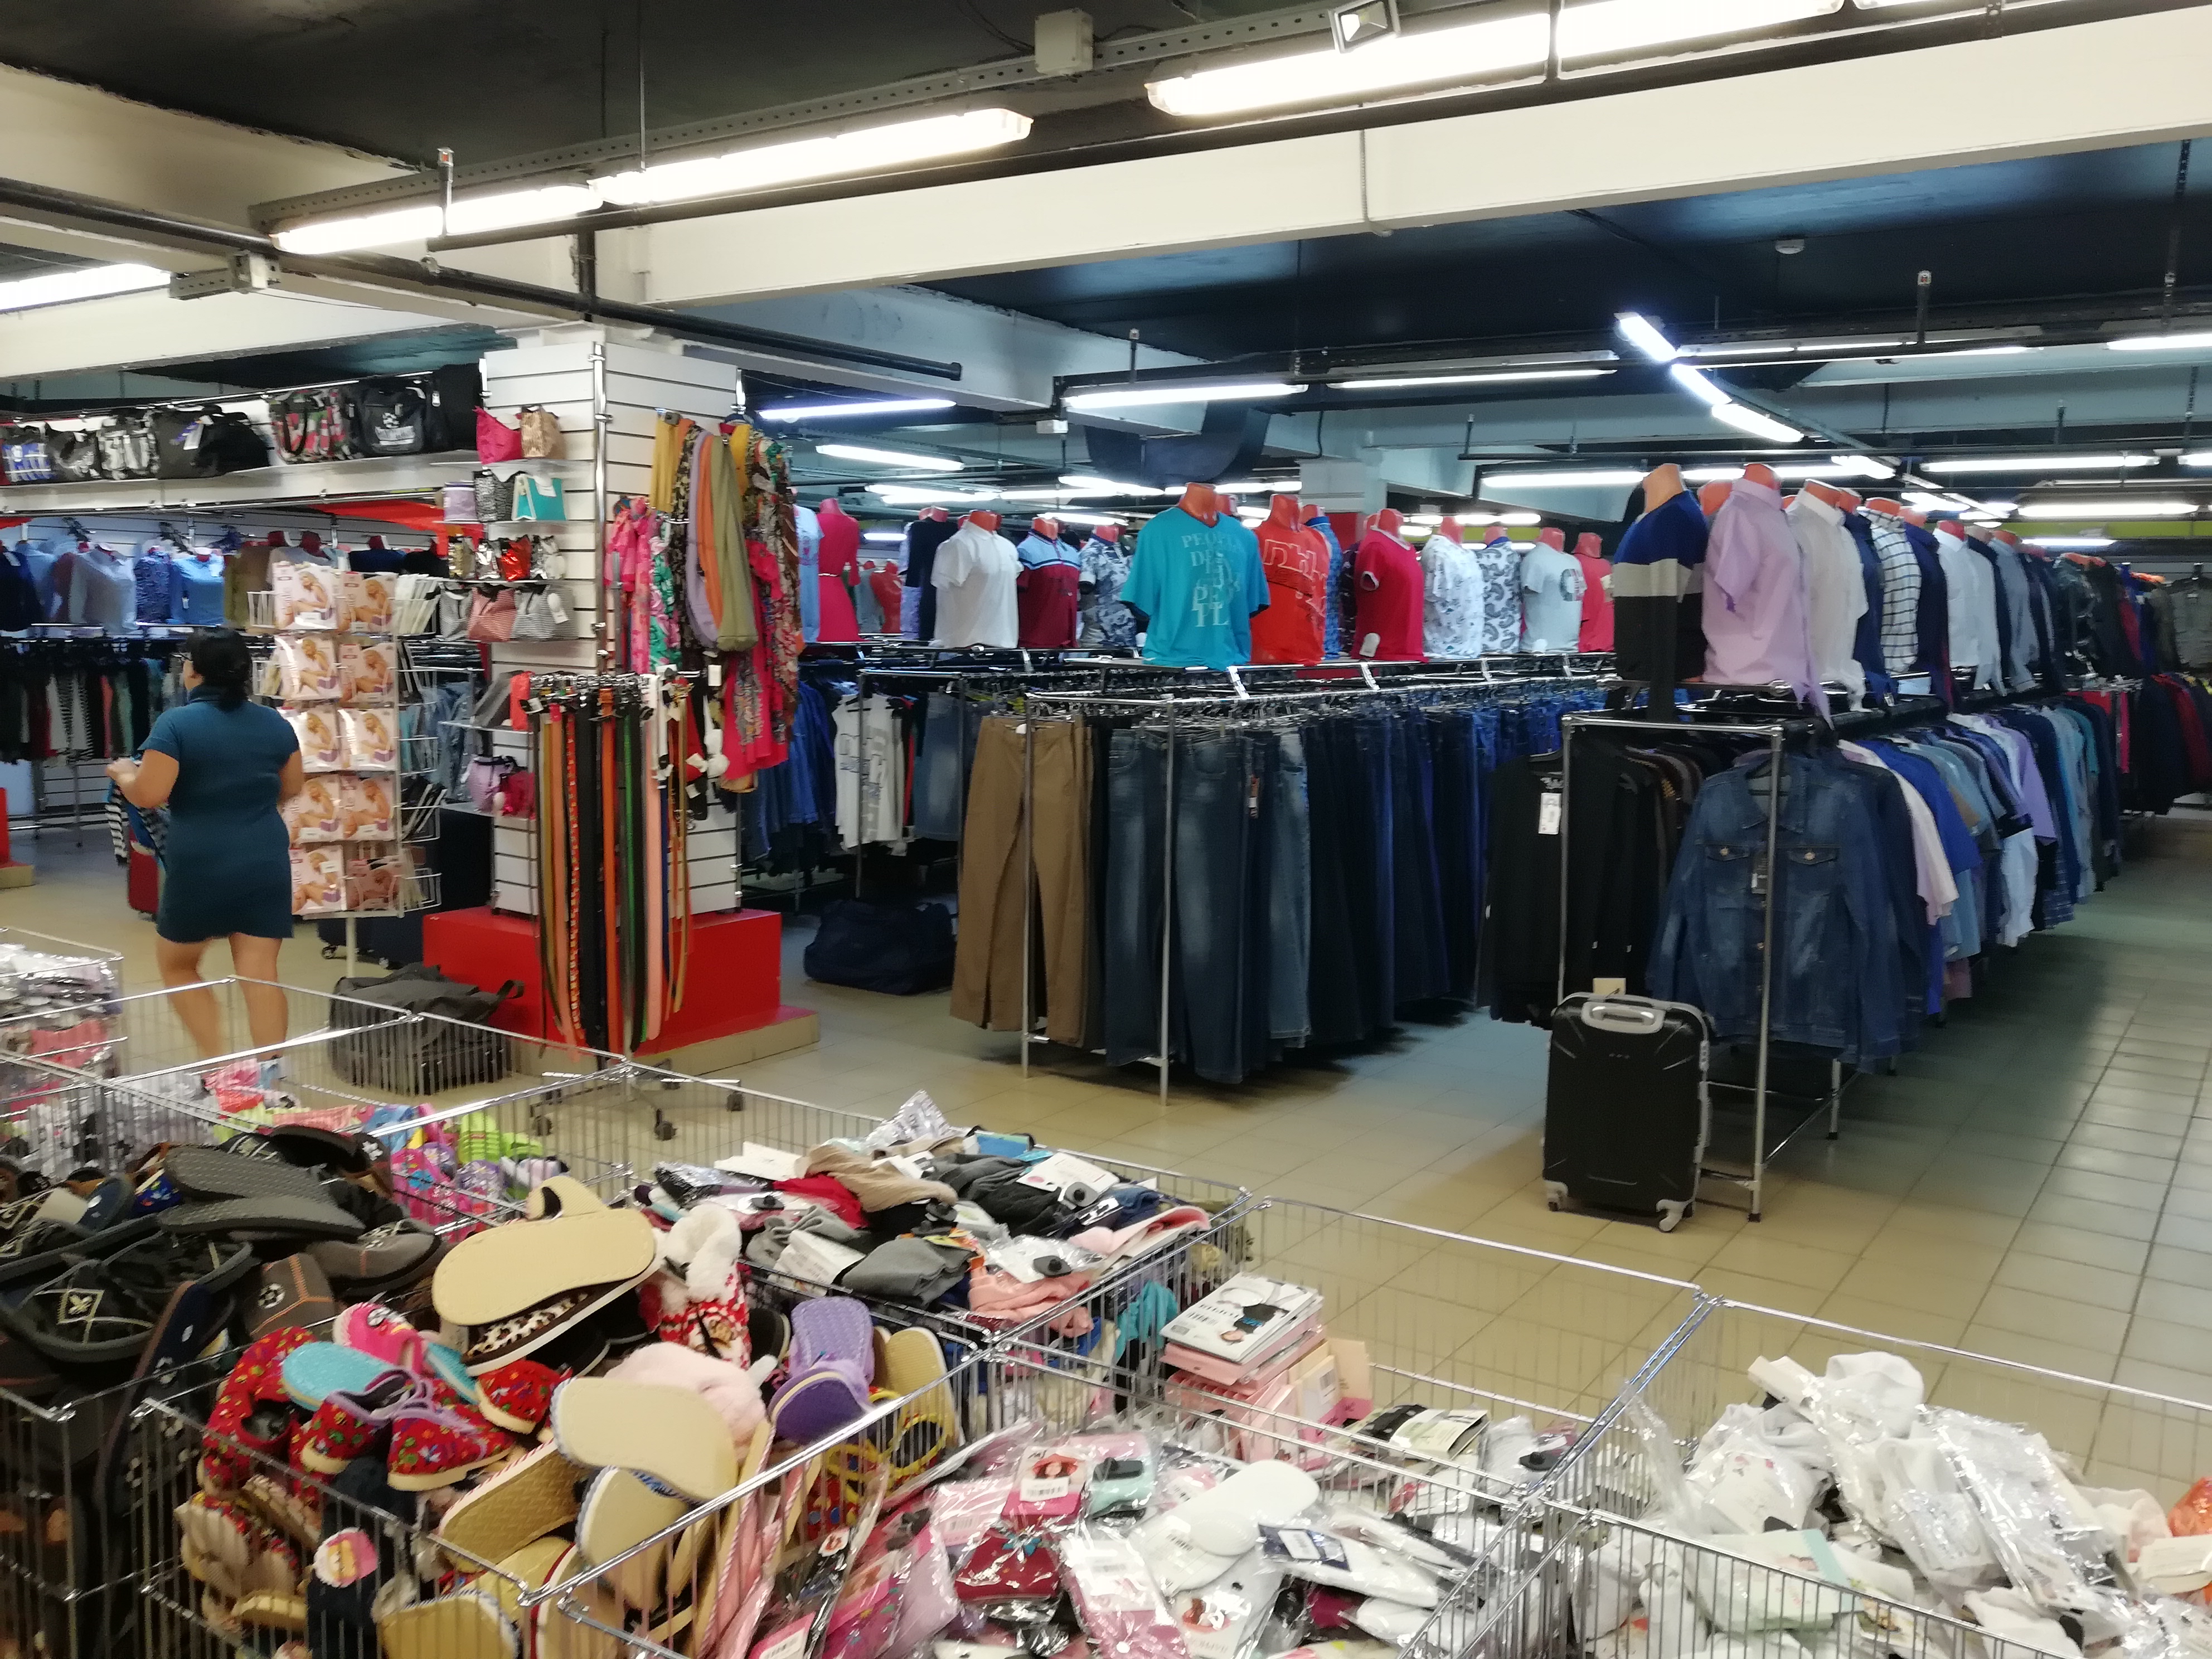 Этажи Магазины Одежды